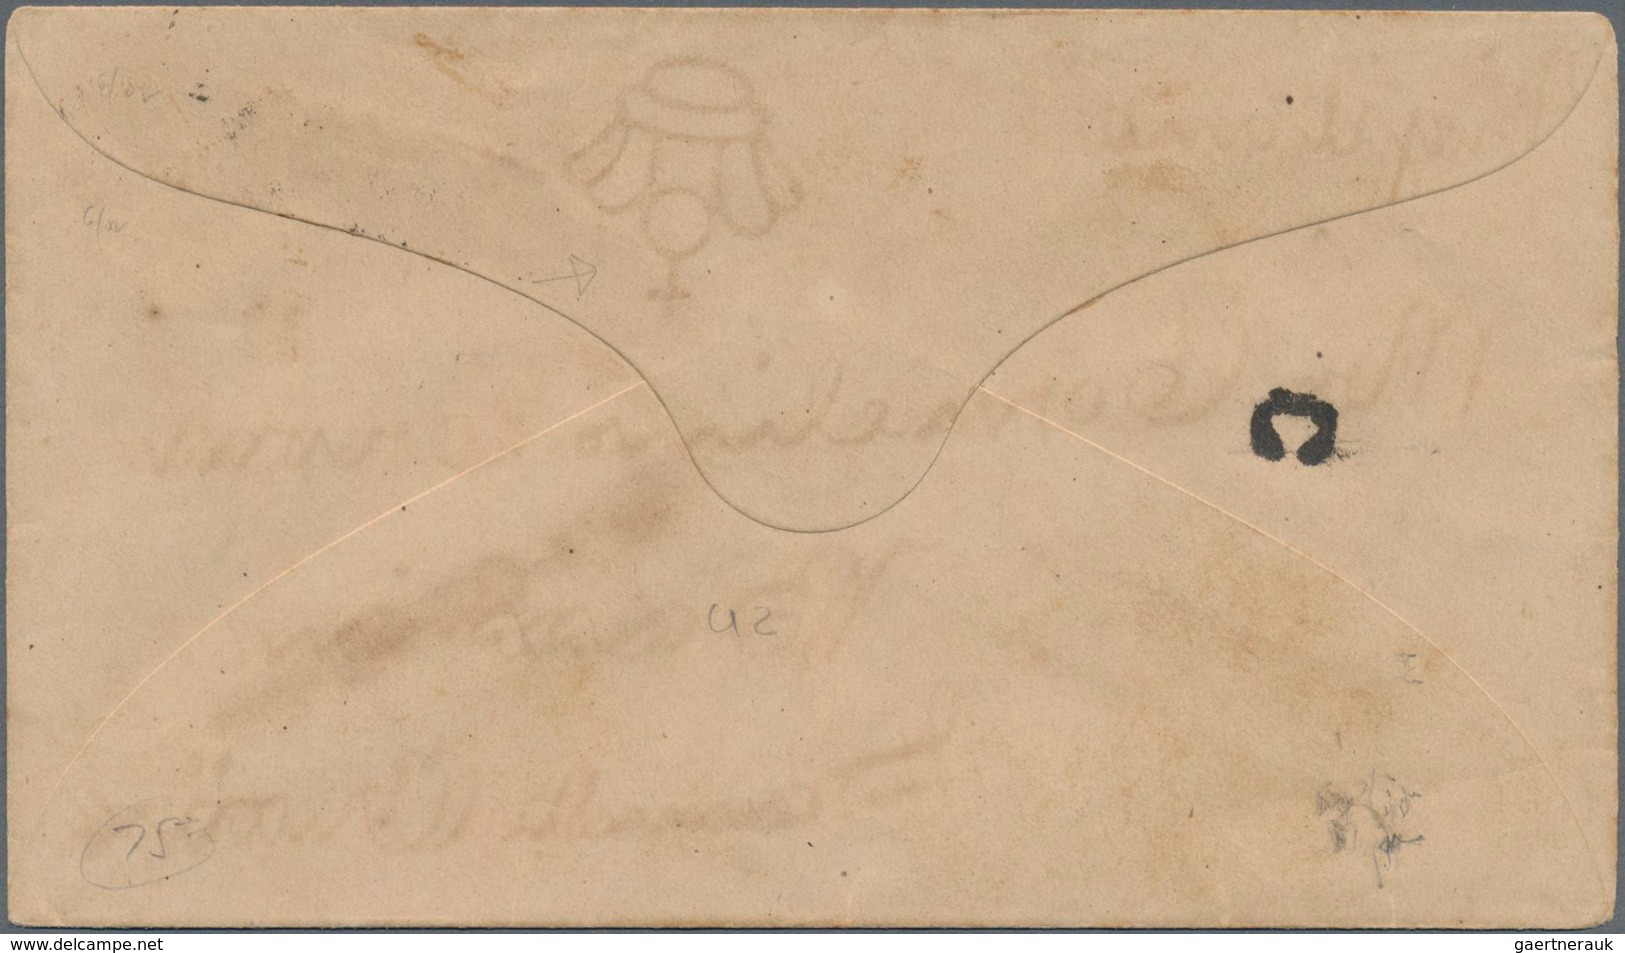 Dänisch-Westindien: 1891 Postal Stationery Envelope 3 Cents Red (watermark Type B) Canceled With Unn - Dänische Antillen (Westindien)